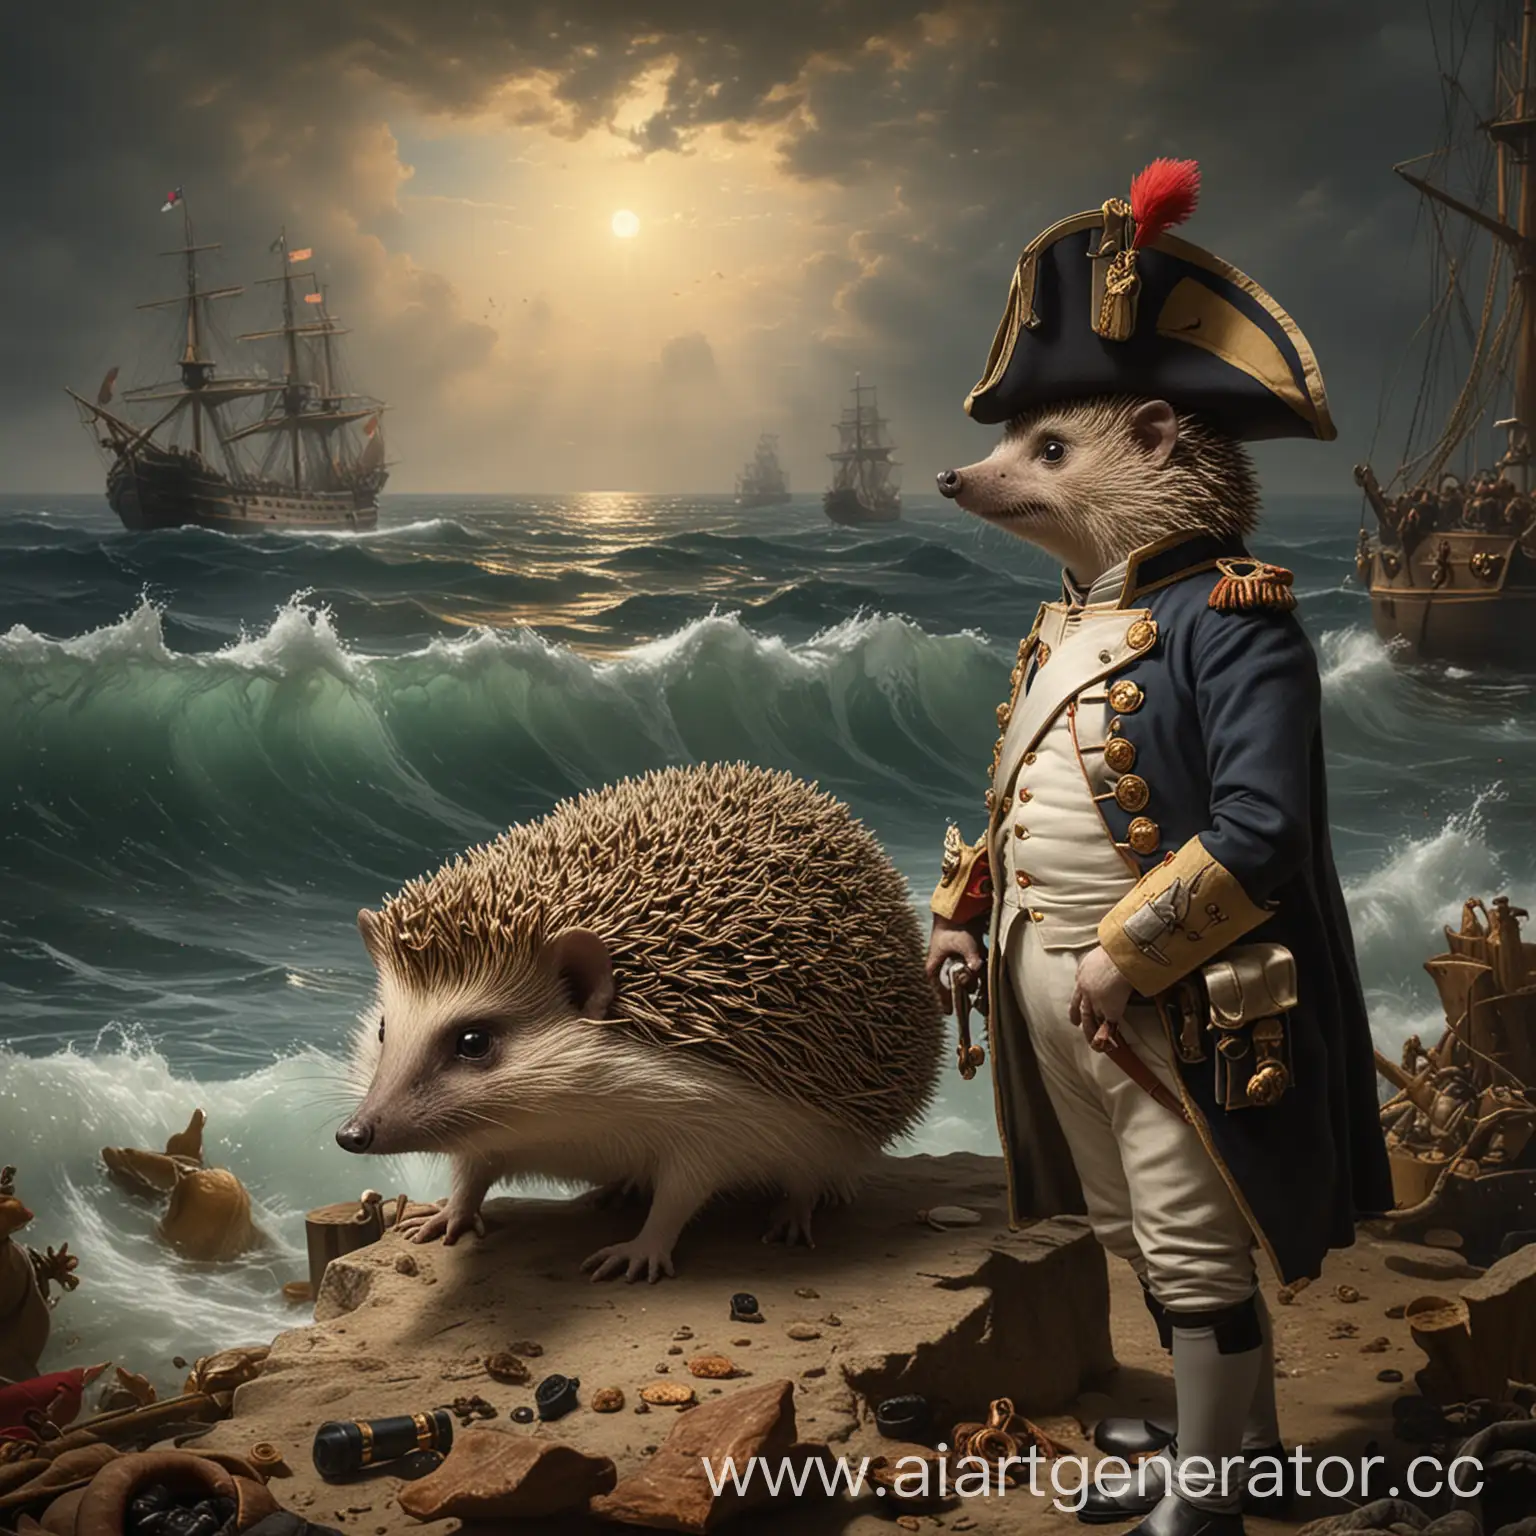 Curious-Hedgehog-Observes-Napoleon-at-Sea